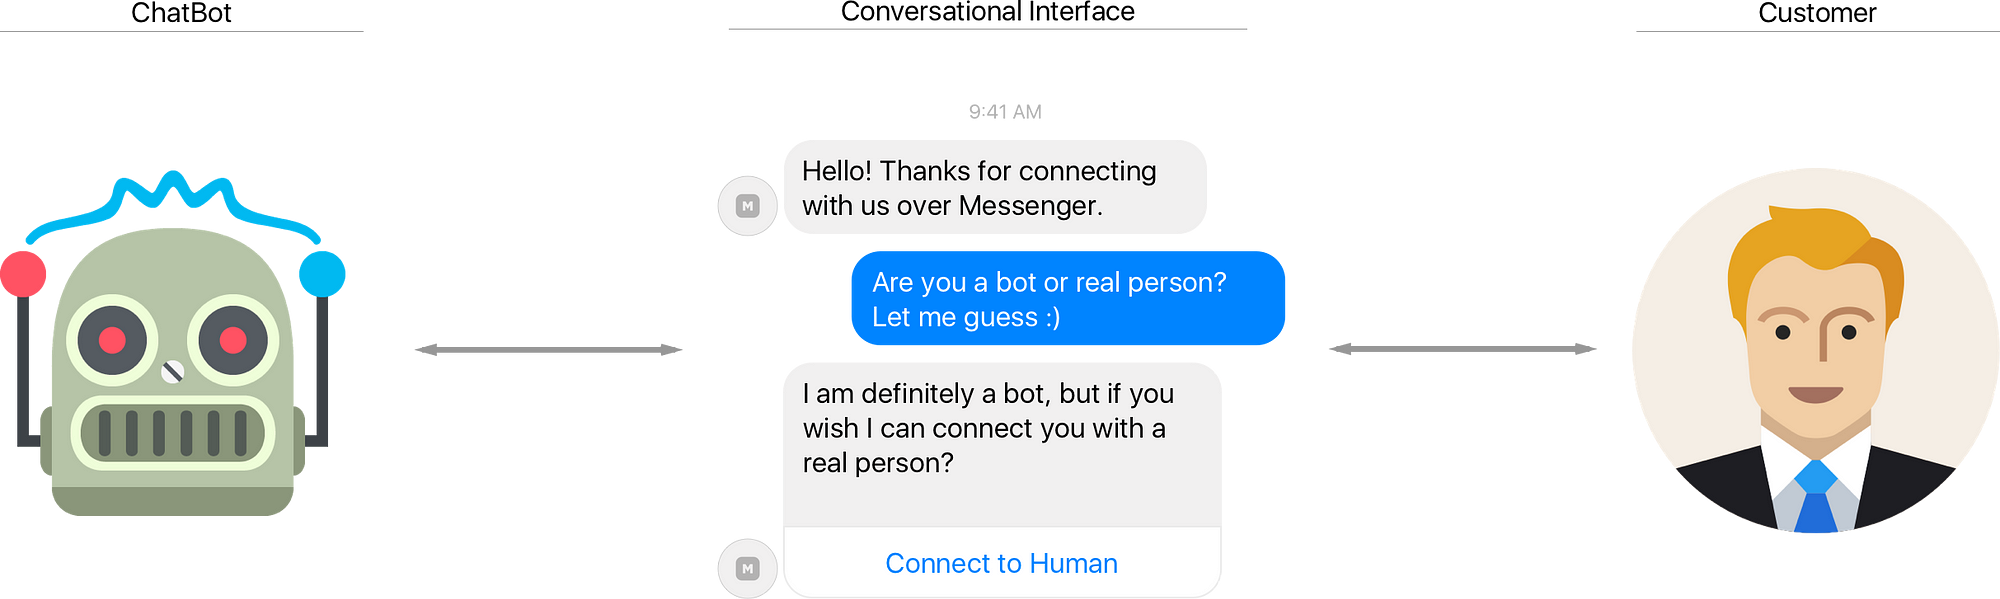 conversation chatbot builder